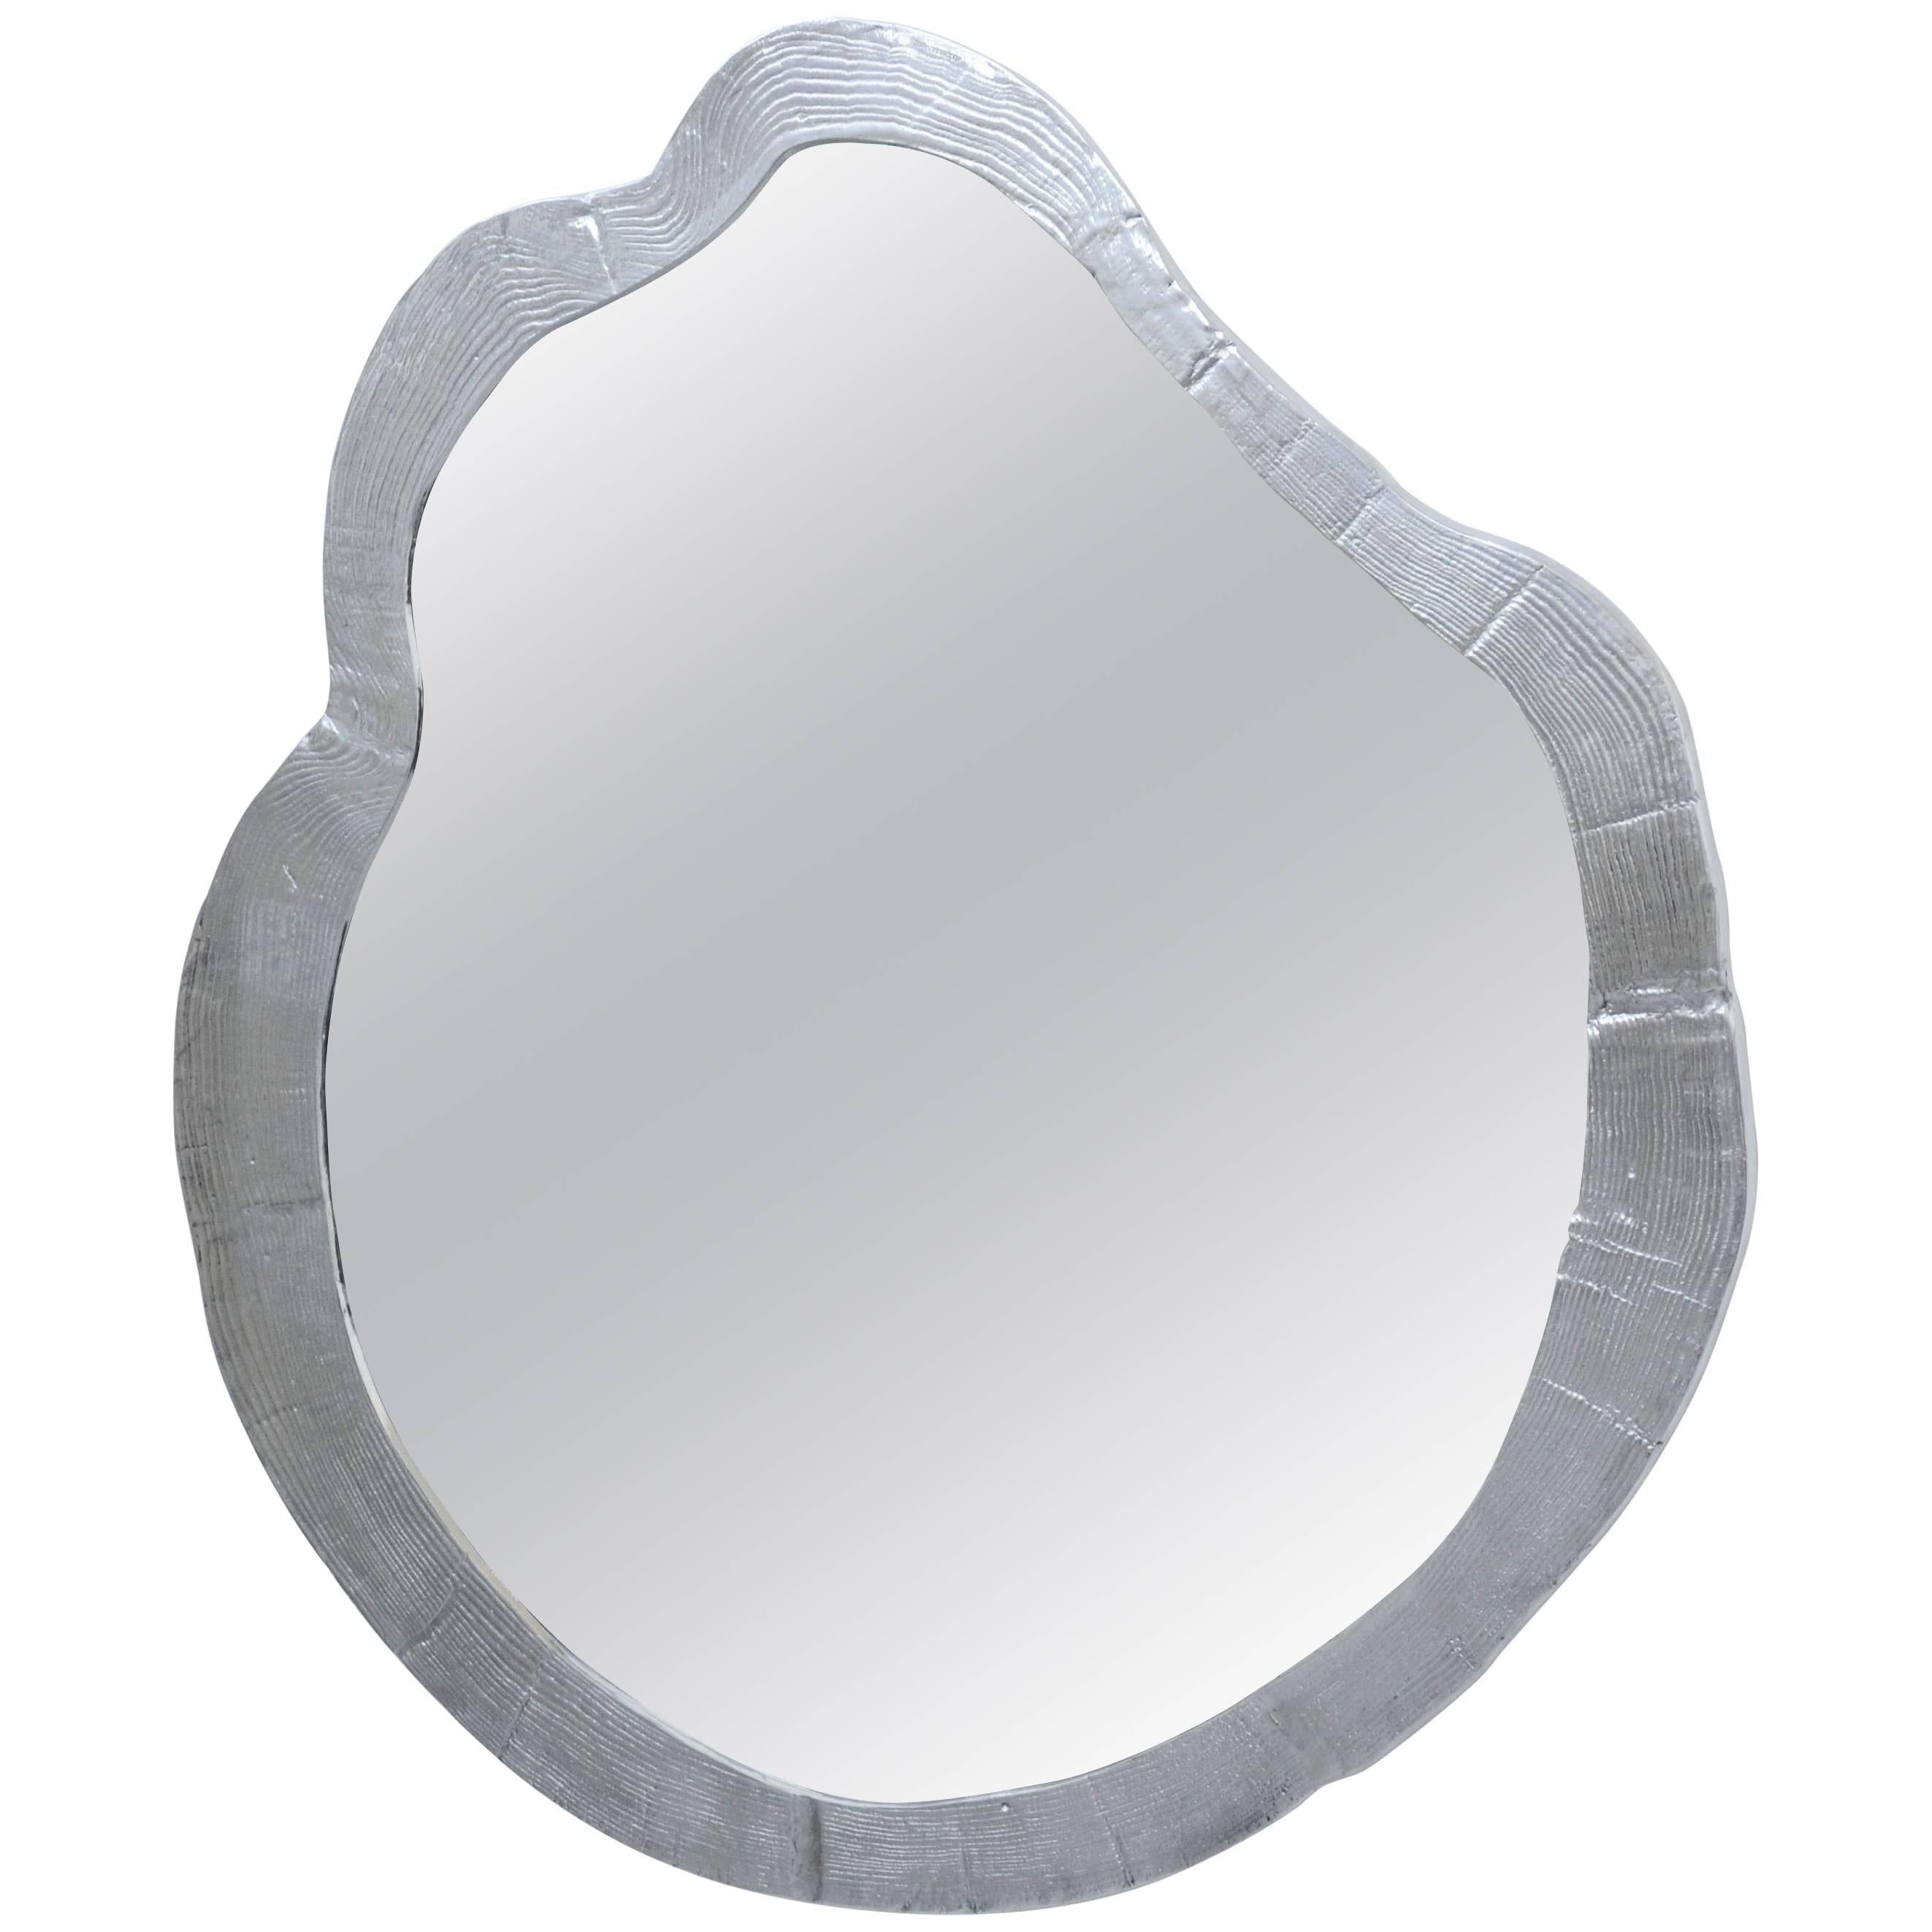 Tronchi Specchi Mirror For Sale